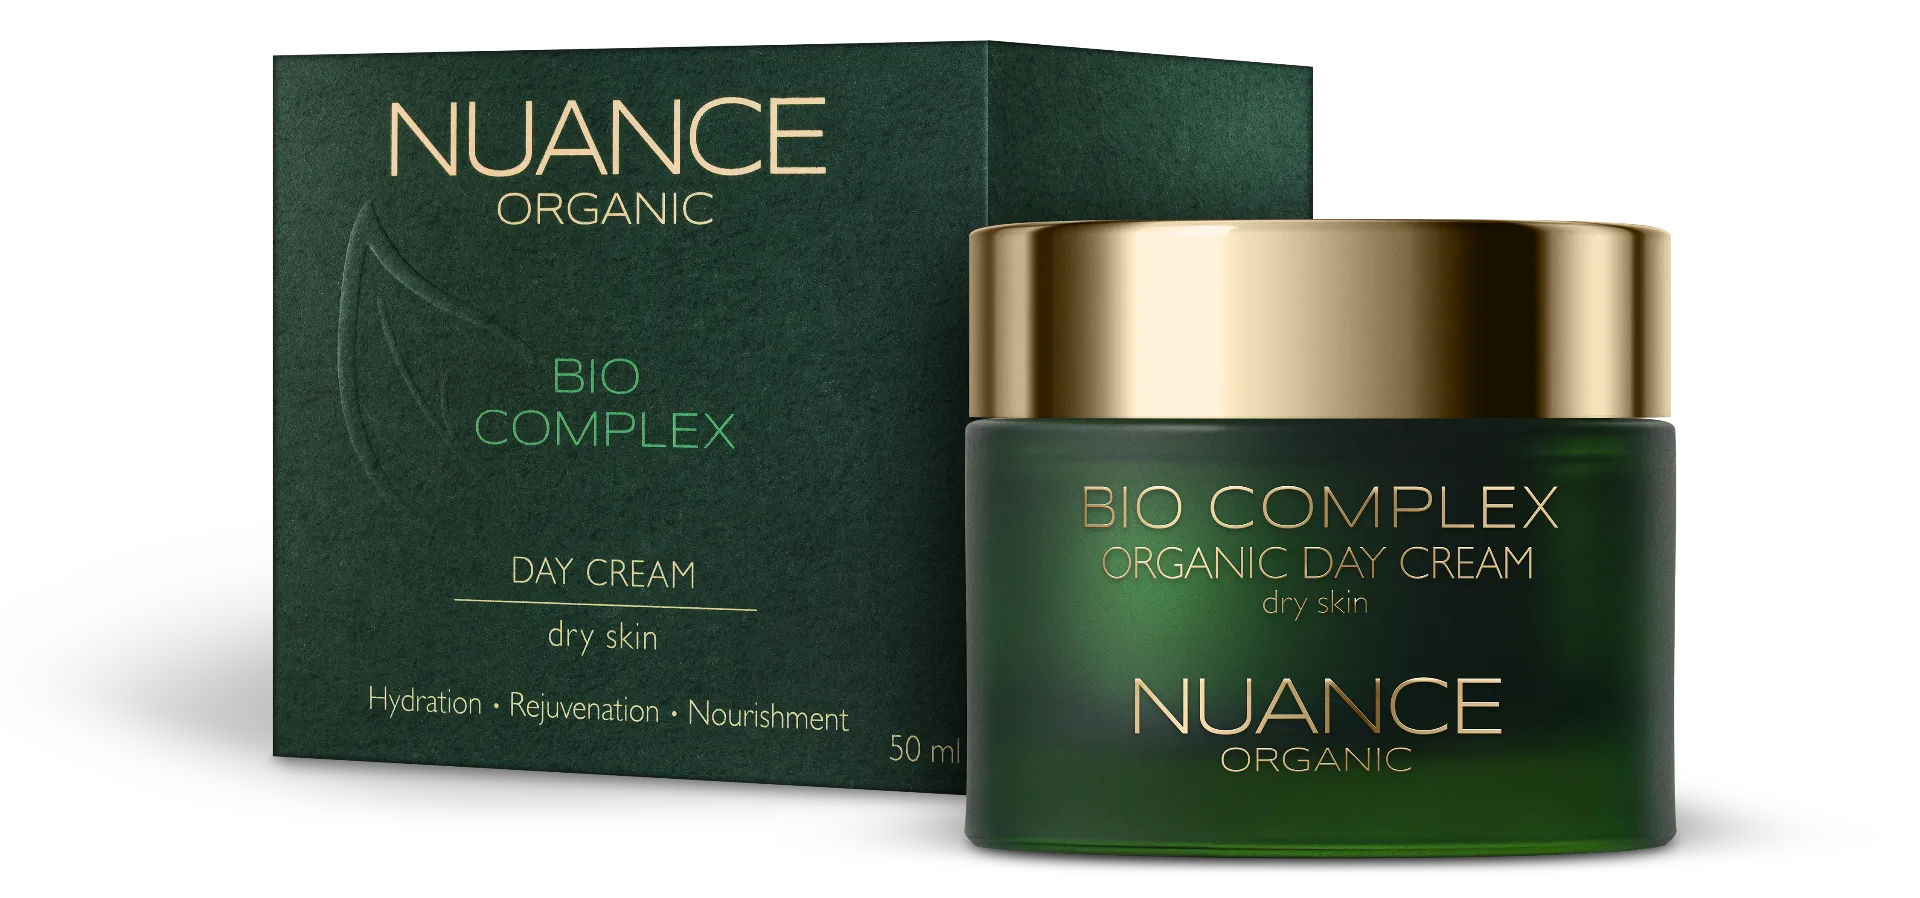 Nuance Organic Bio Complex, krem na dzień do suchej skóry, 50 ml 